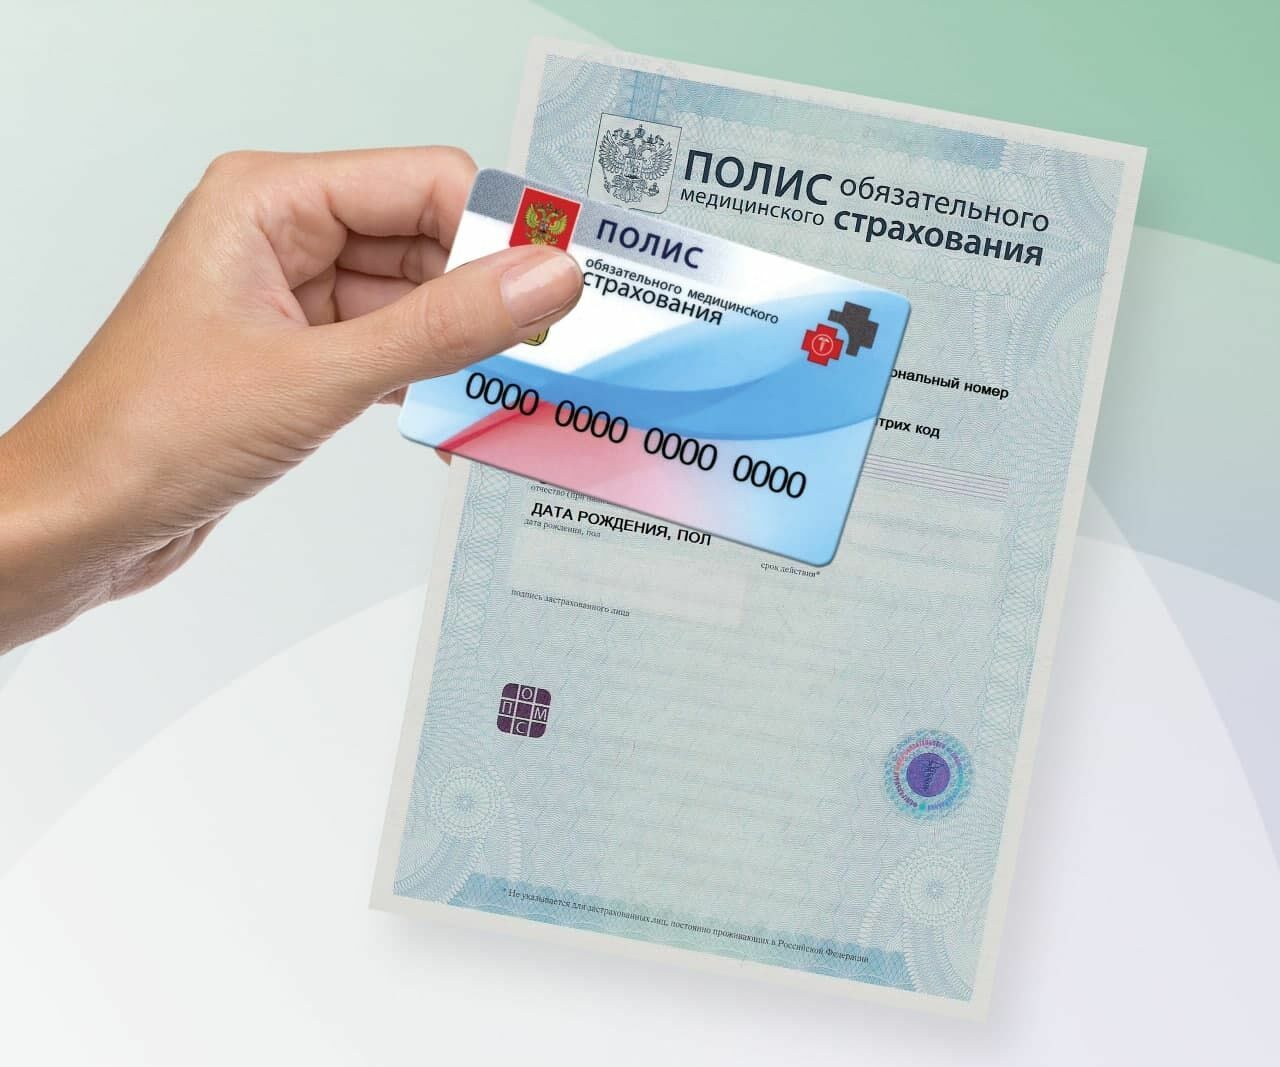 Цифра вместо бумаги: в России запущен новый полис ОМС